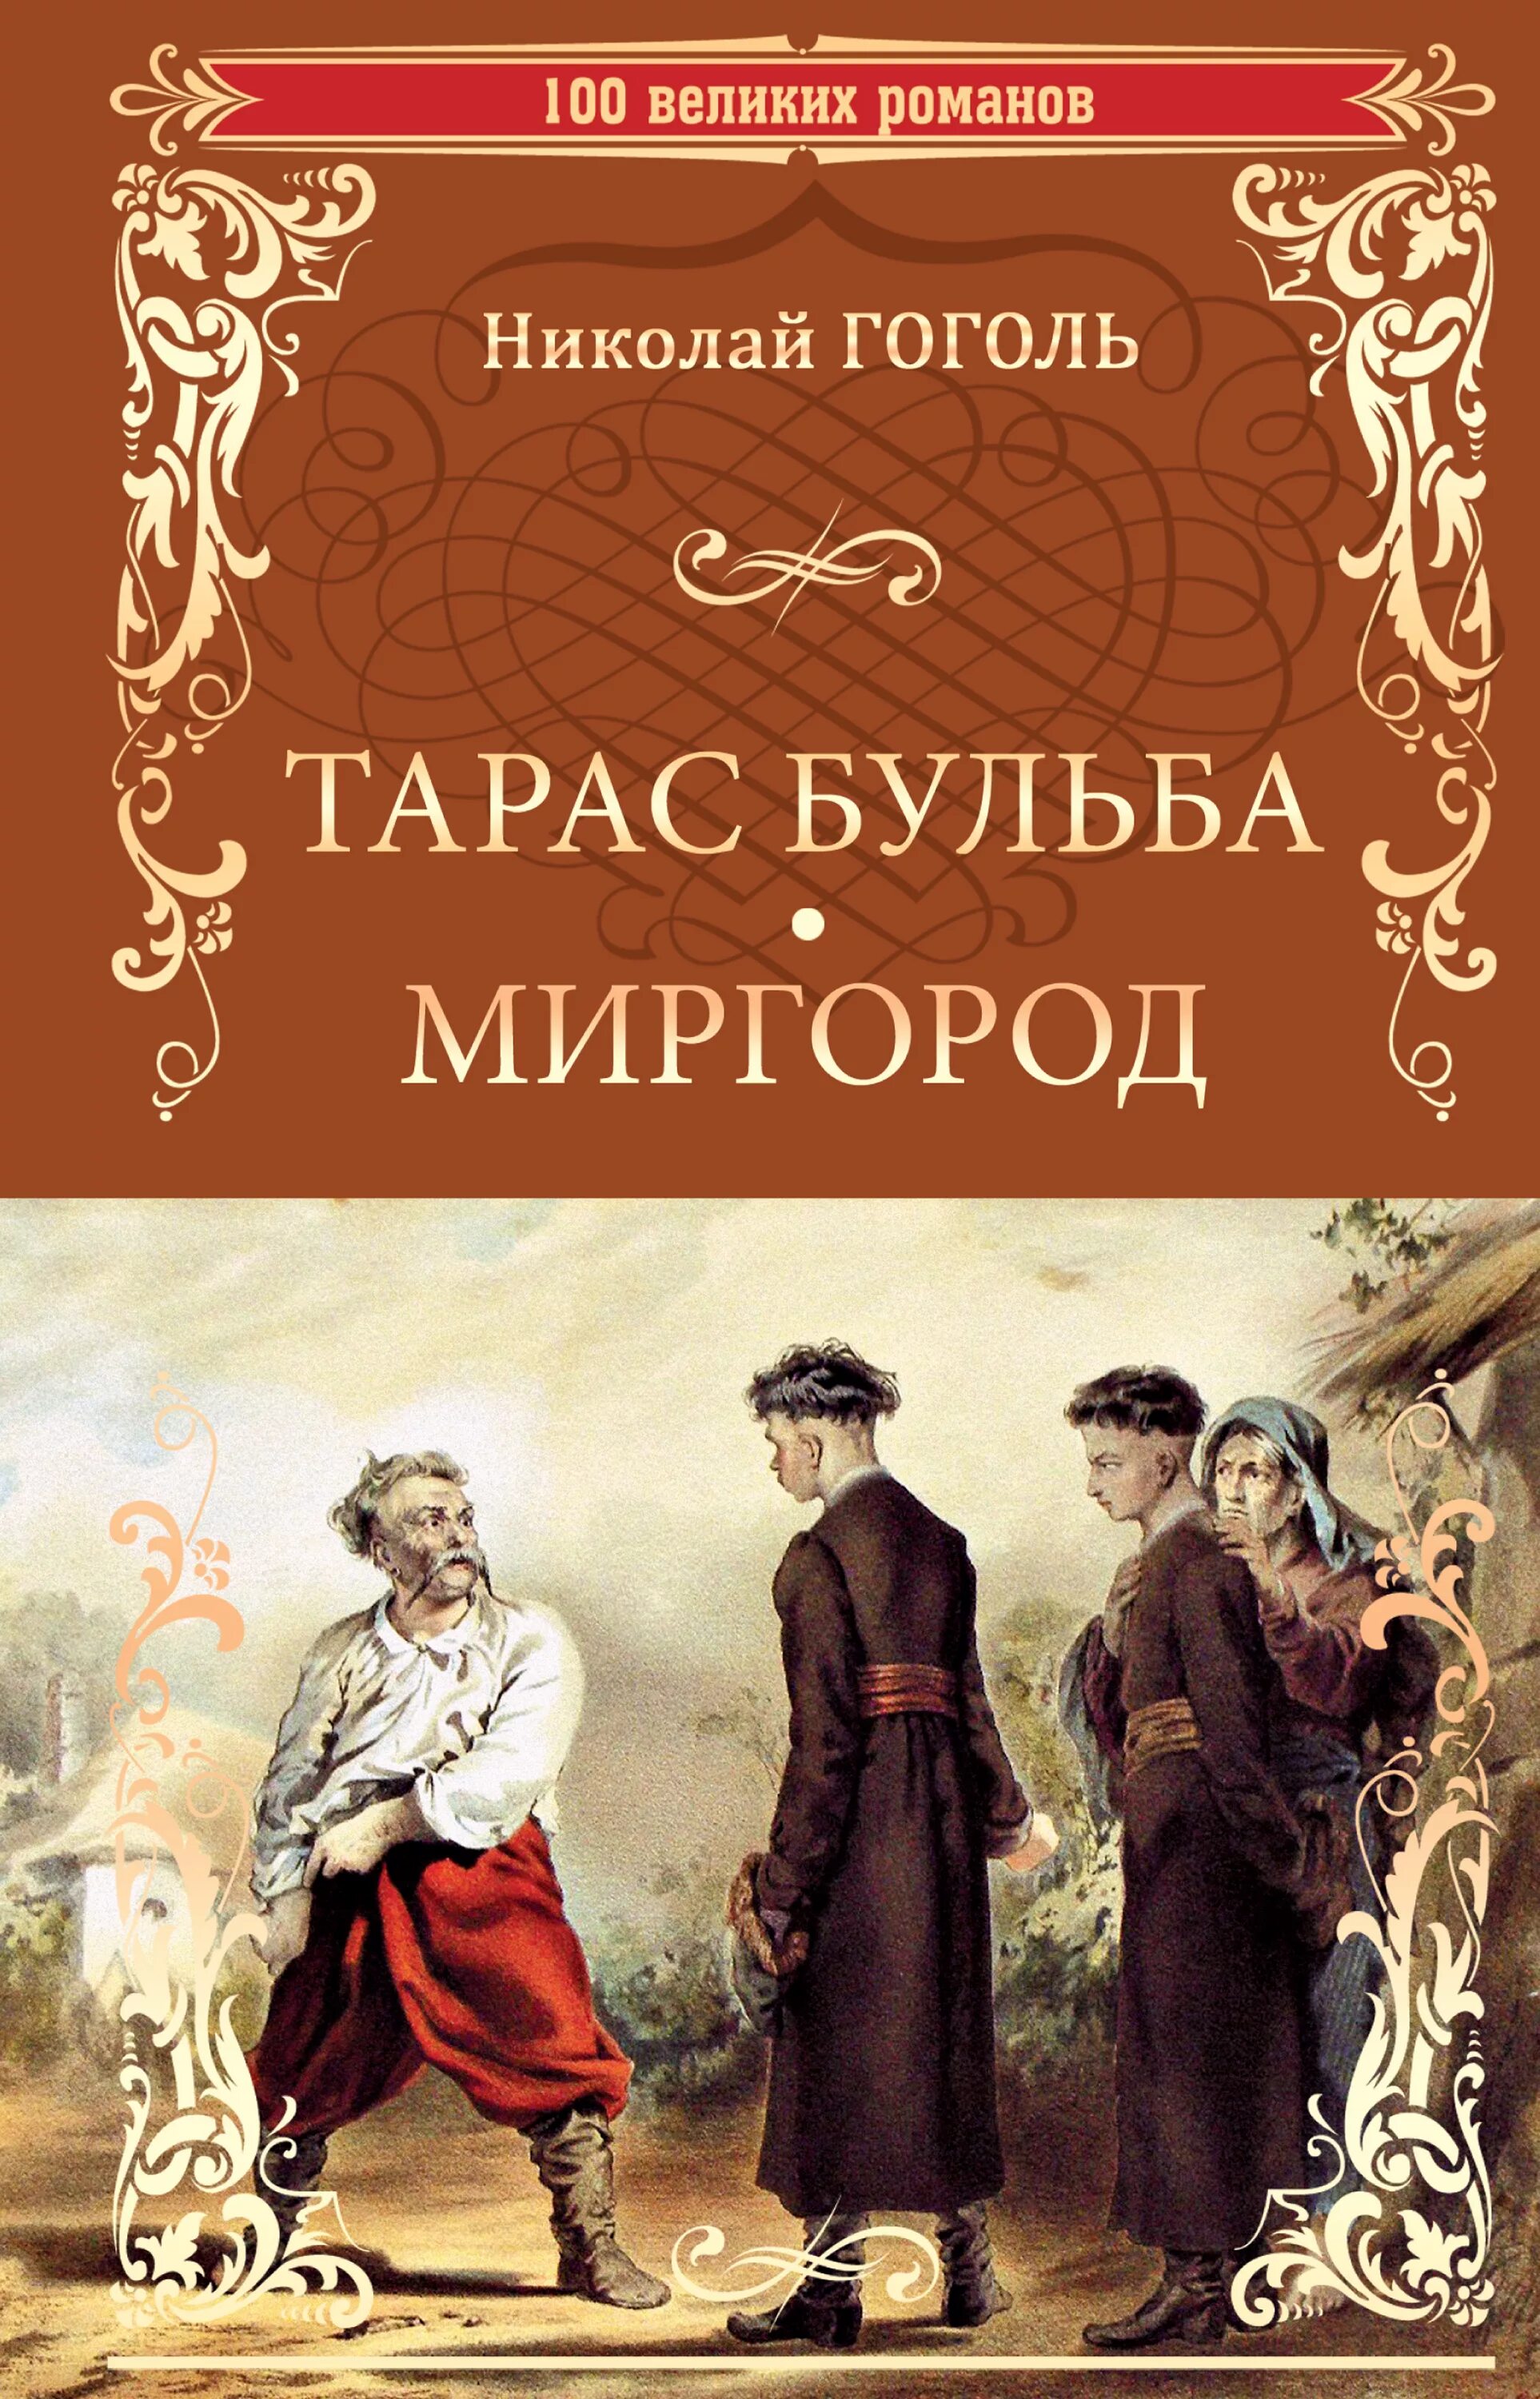 Книга Гоголь сборник повестей Миргород. Книга миргород гоголь